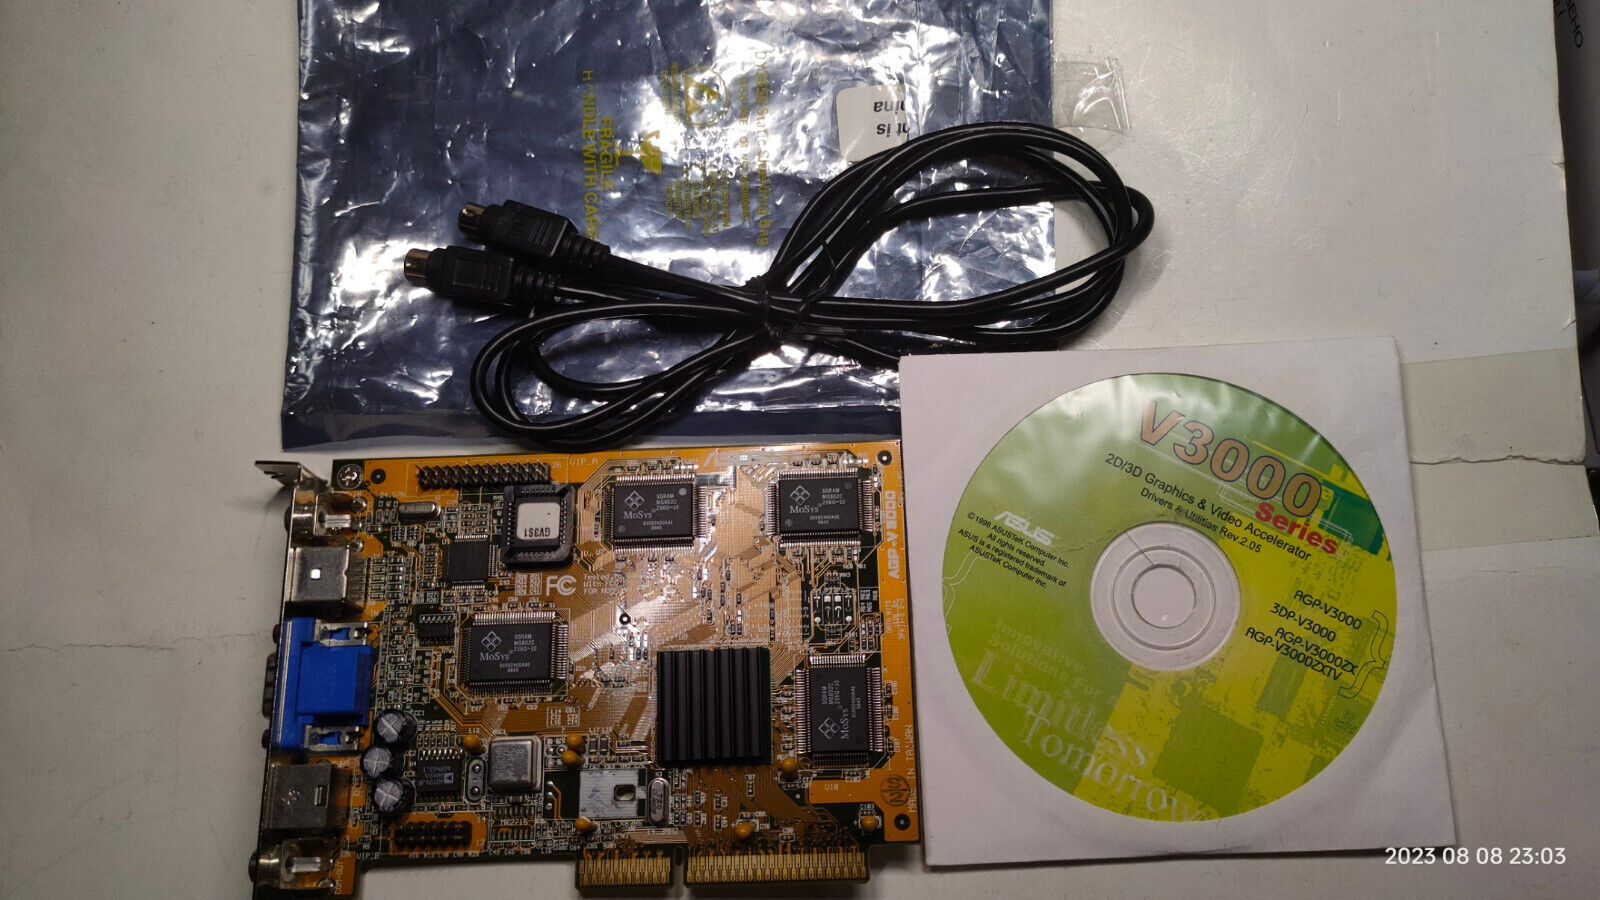 VGA Card KIT ASUS AGP-V3000 VIVO (Nvidia RIVA 128) 4 Mb + drivers